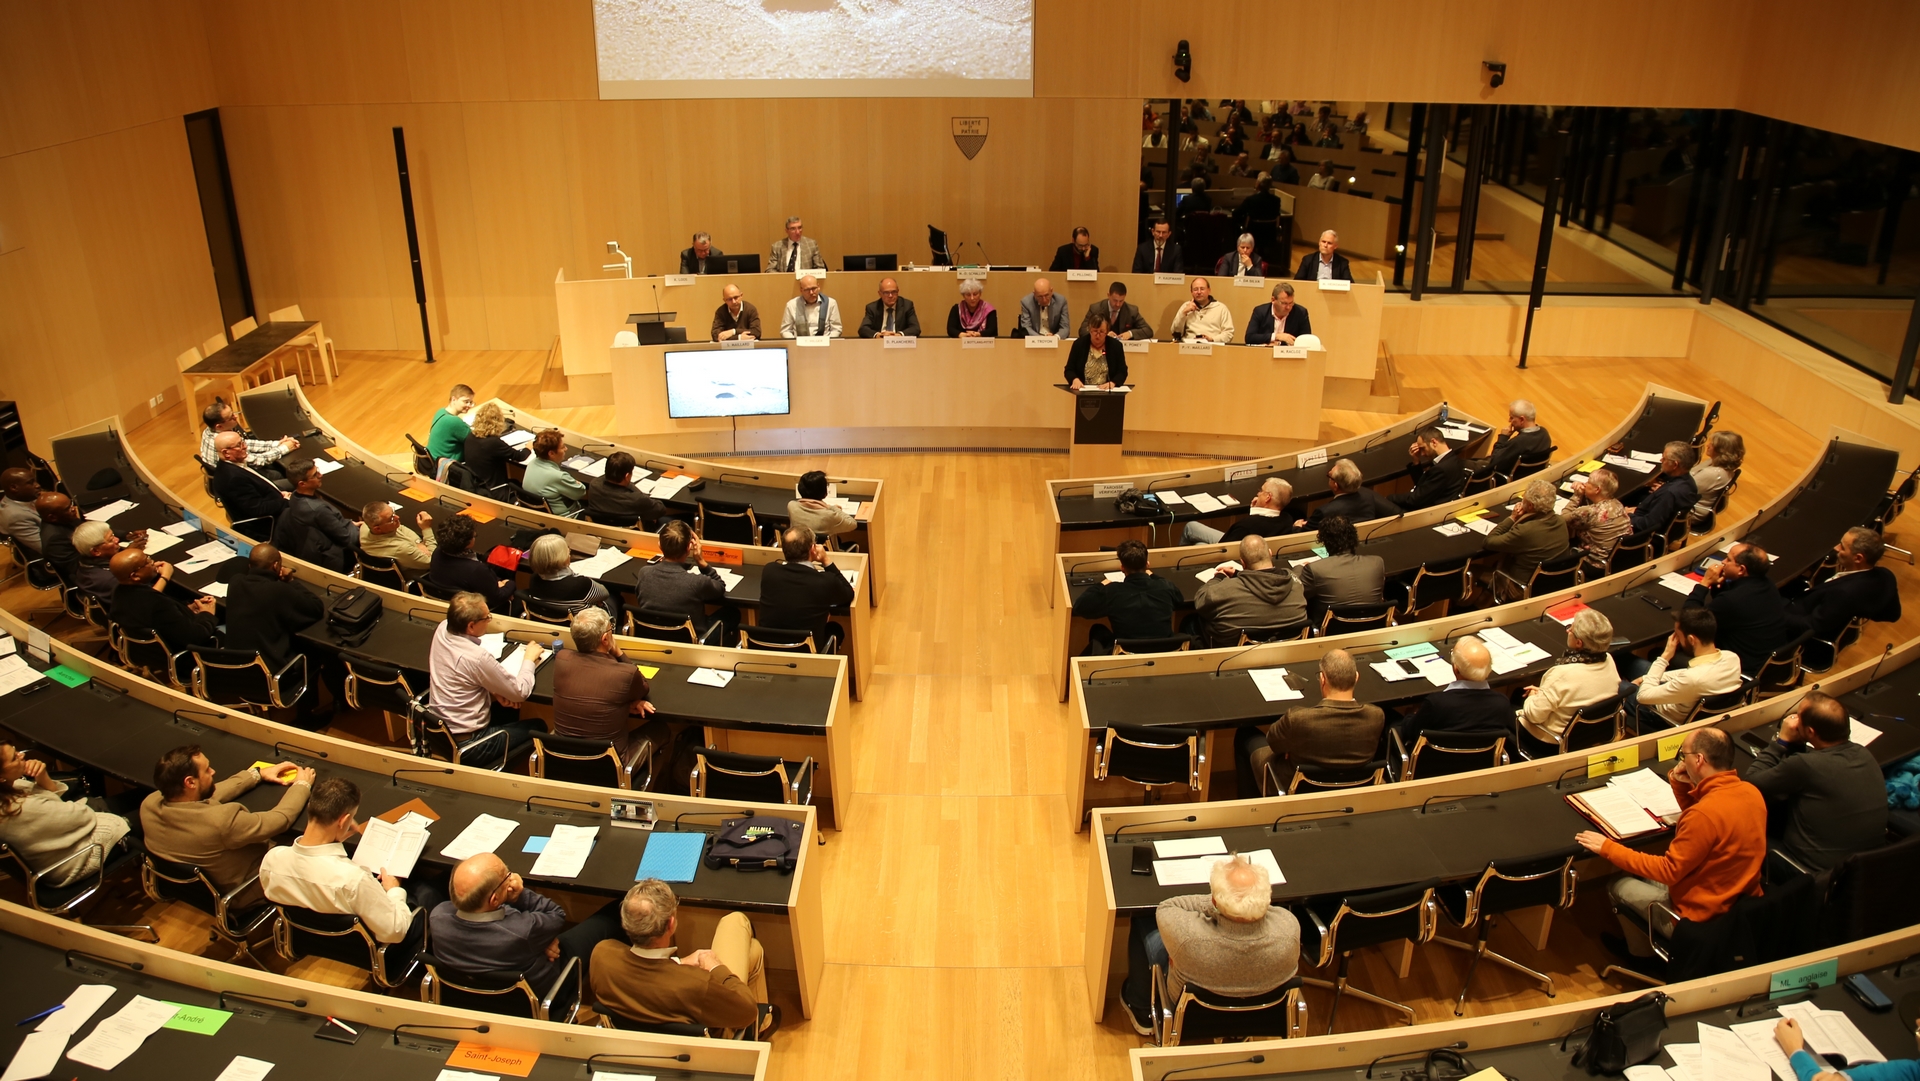 L'assemblée de la FEDEC-VD s'est réunie dans la salle du Grand-Conseil vaudois | FEDEC-VD